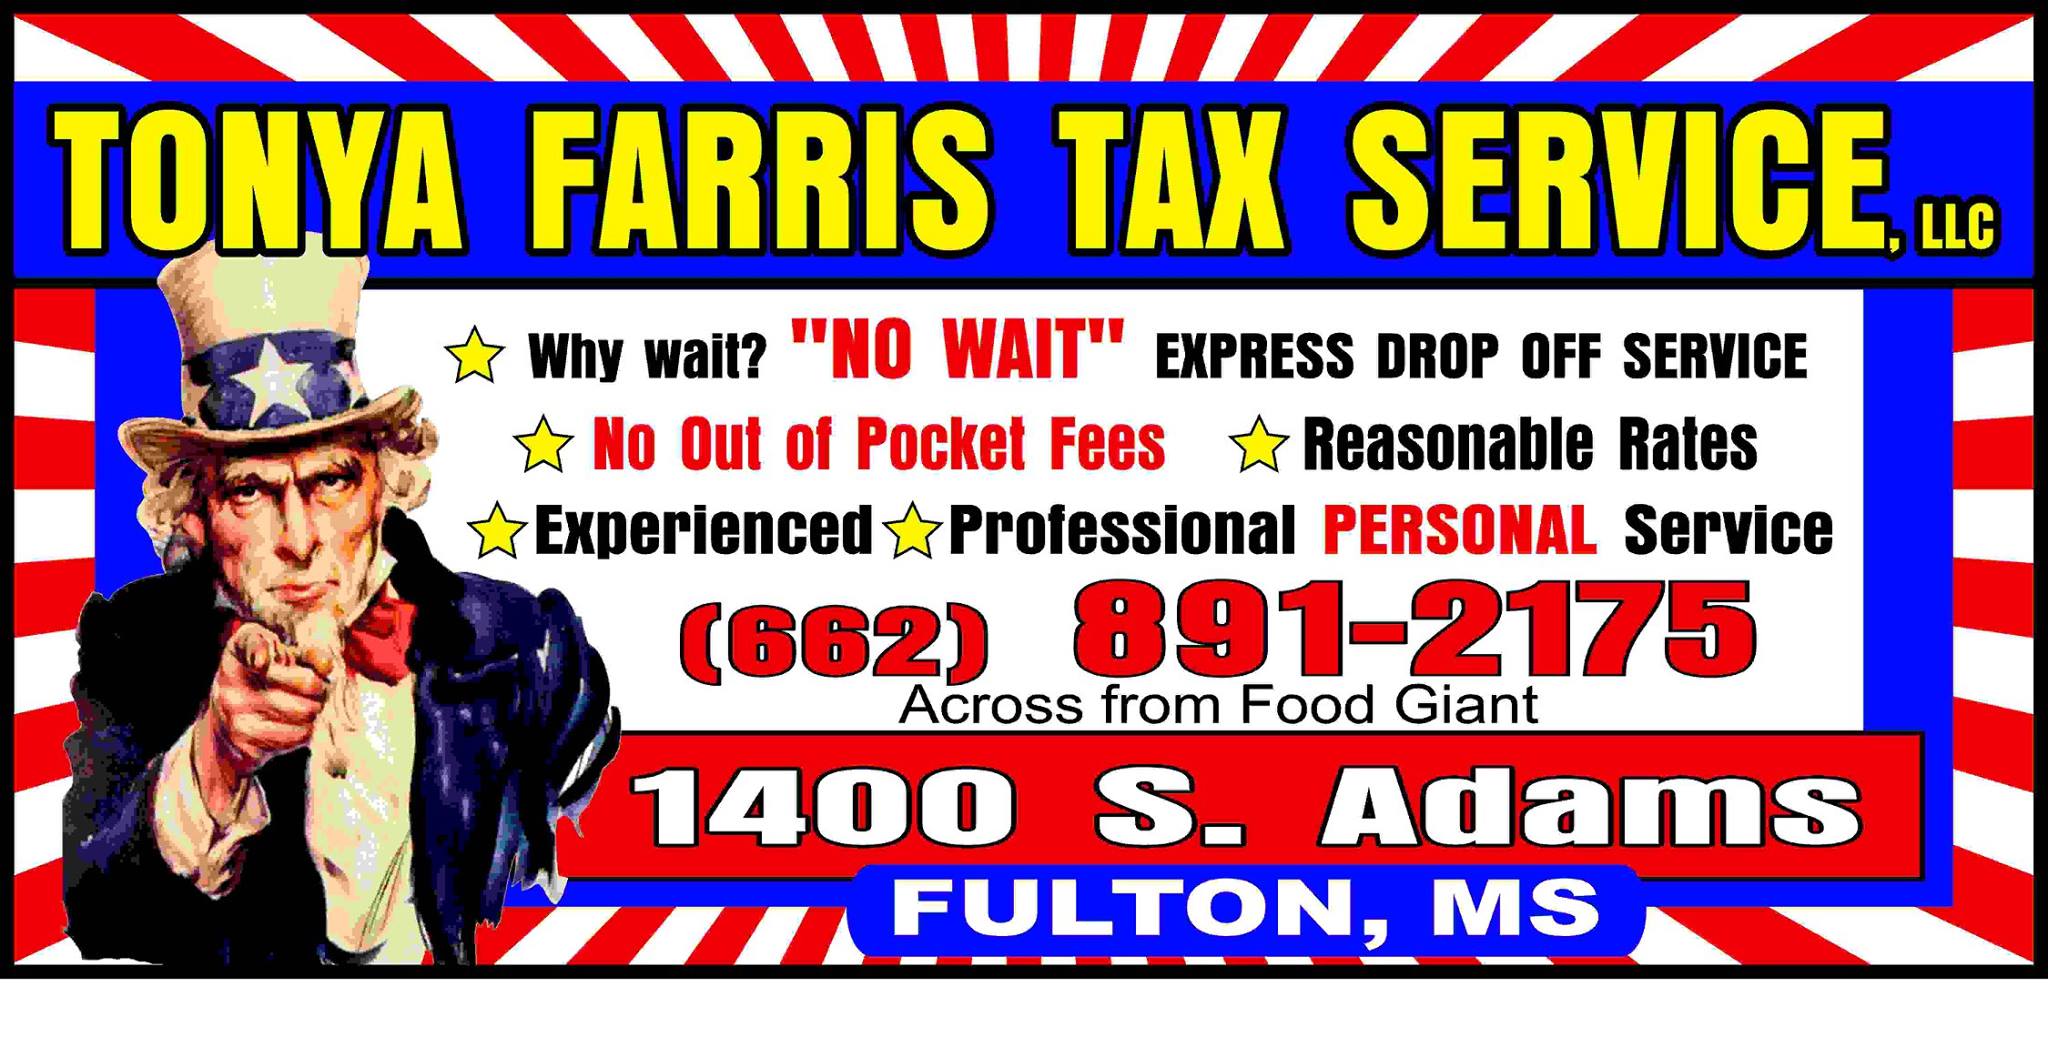 Tonya Farris Tax Services 1509 S Adams St # D, Fulton Mississippi 38843